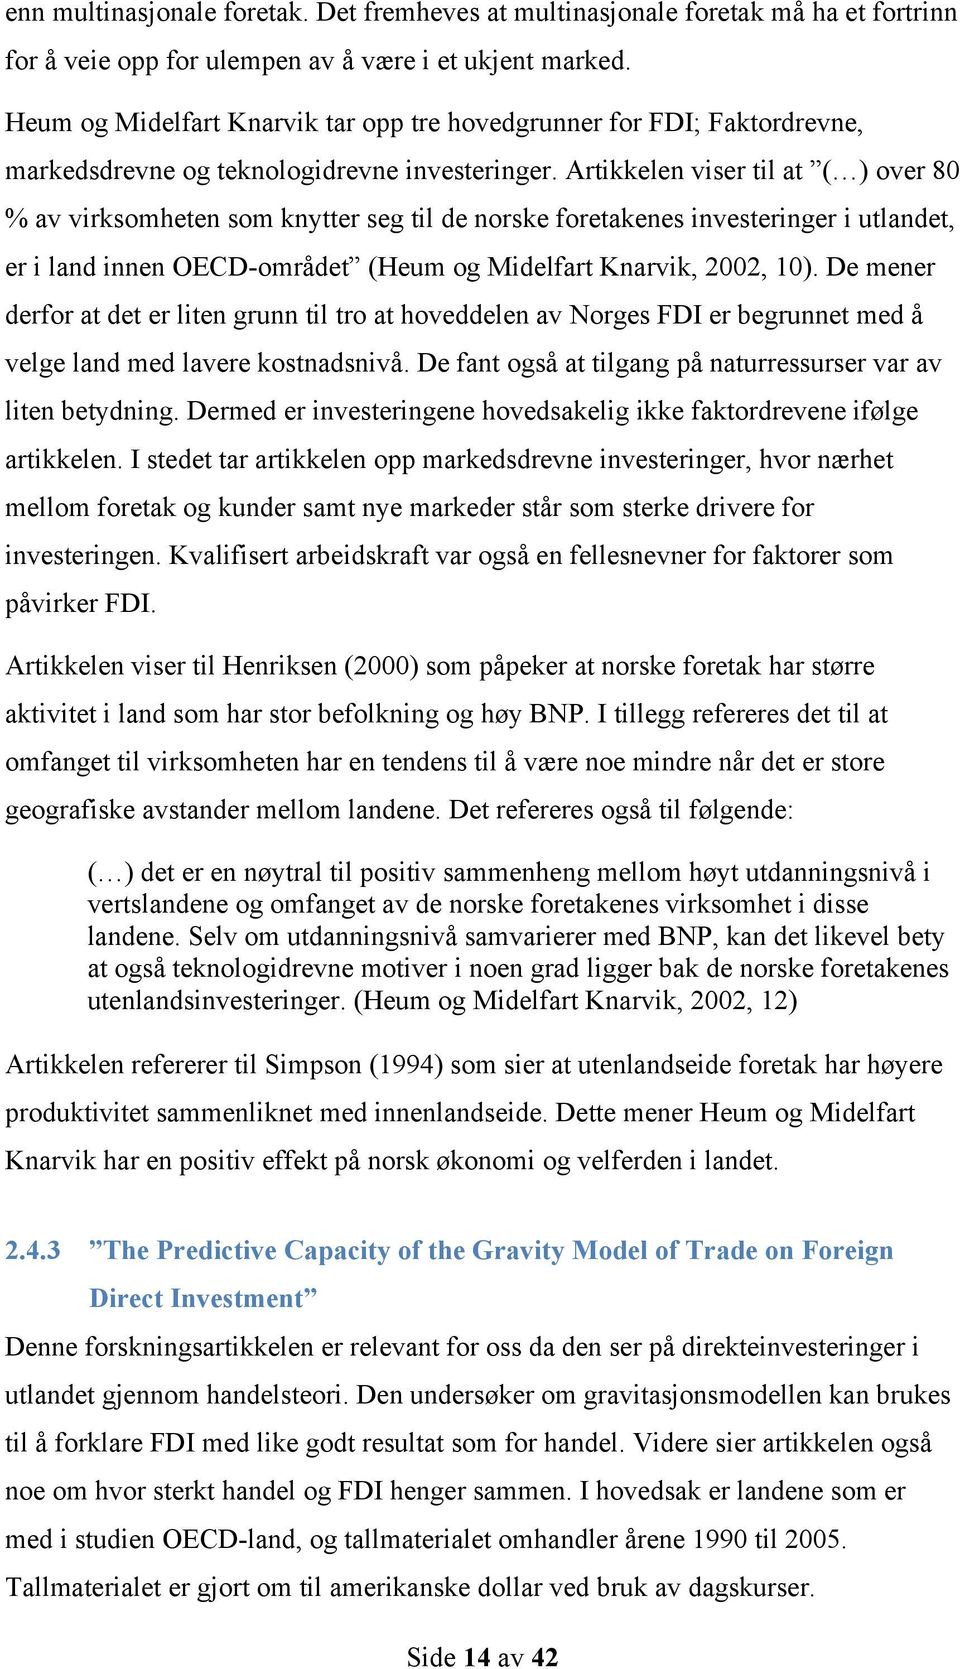 Artikkelen viser til at ( ) over 80 % av virksomheten som knytter seg til de norske foretakenes investeringer i utlandet, er i land innen OECD-området (Heum og Midelfart Knarvik, 2002, 10).